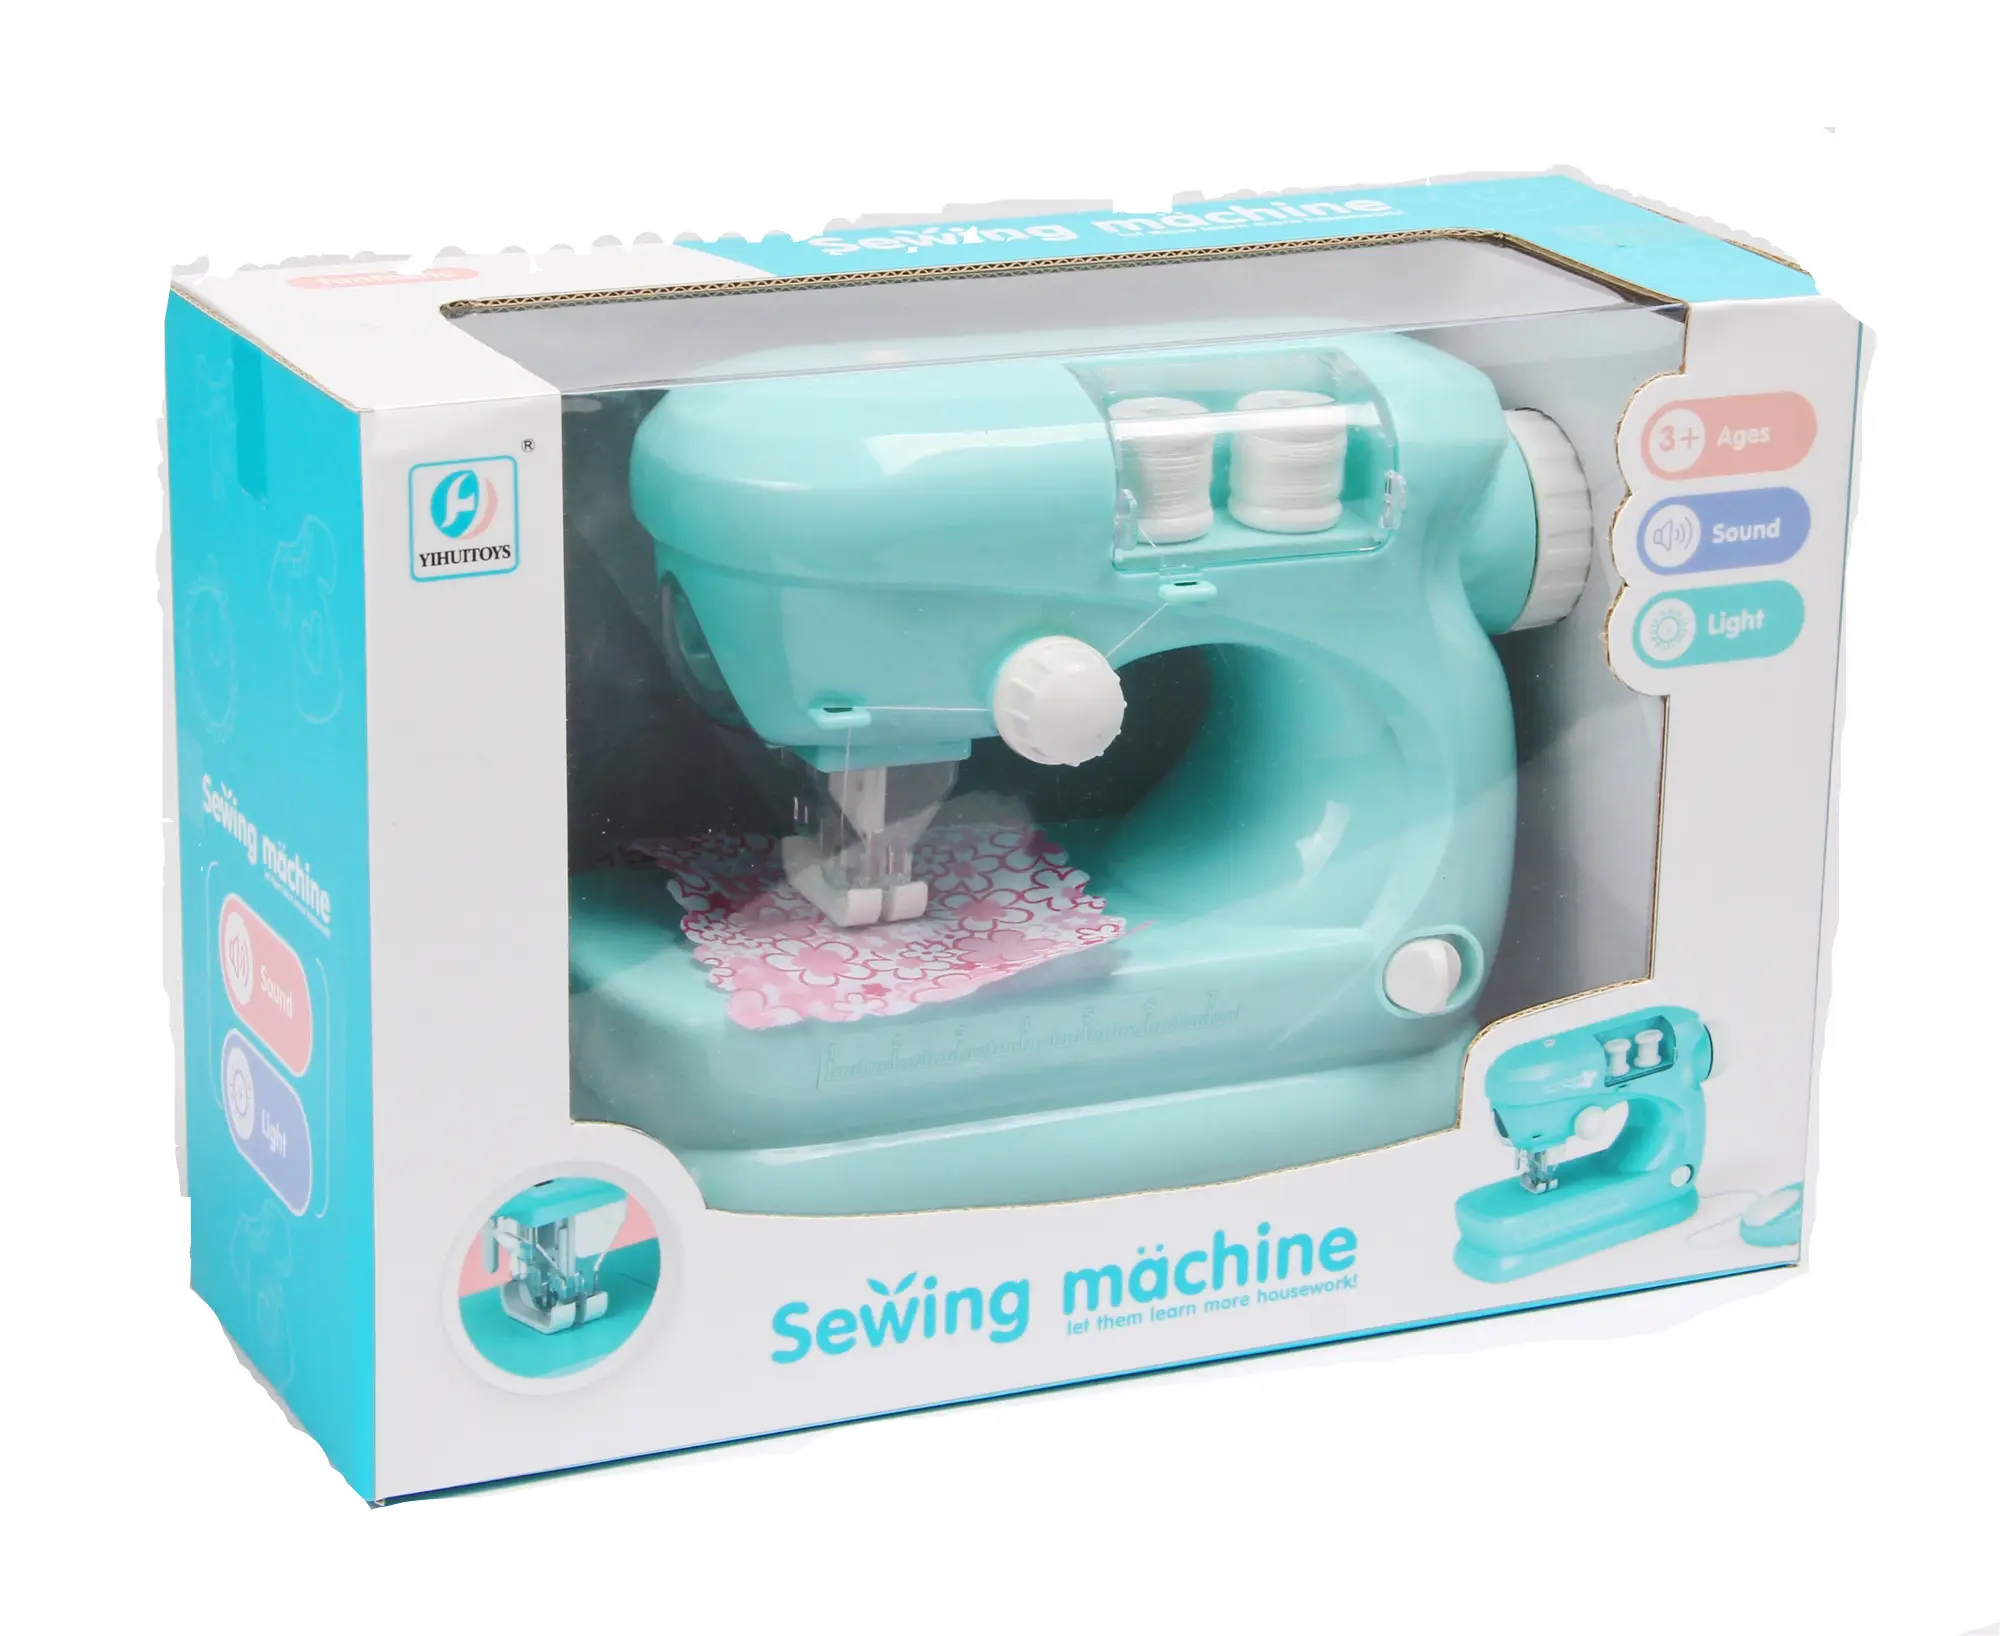 DF electronic toys-máquinas de coser para niños, simulación de juguete, casa de juegos, productos más vendidos, 2020 en EE. UU., electrodomésticos amazon